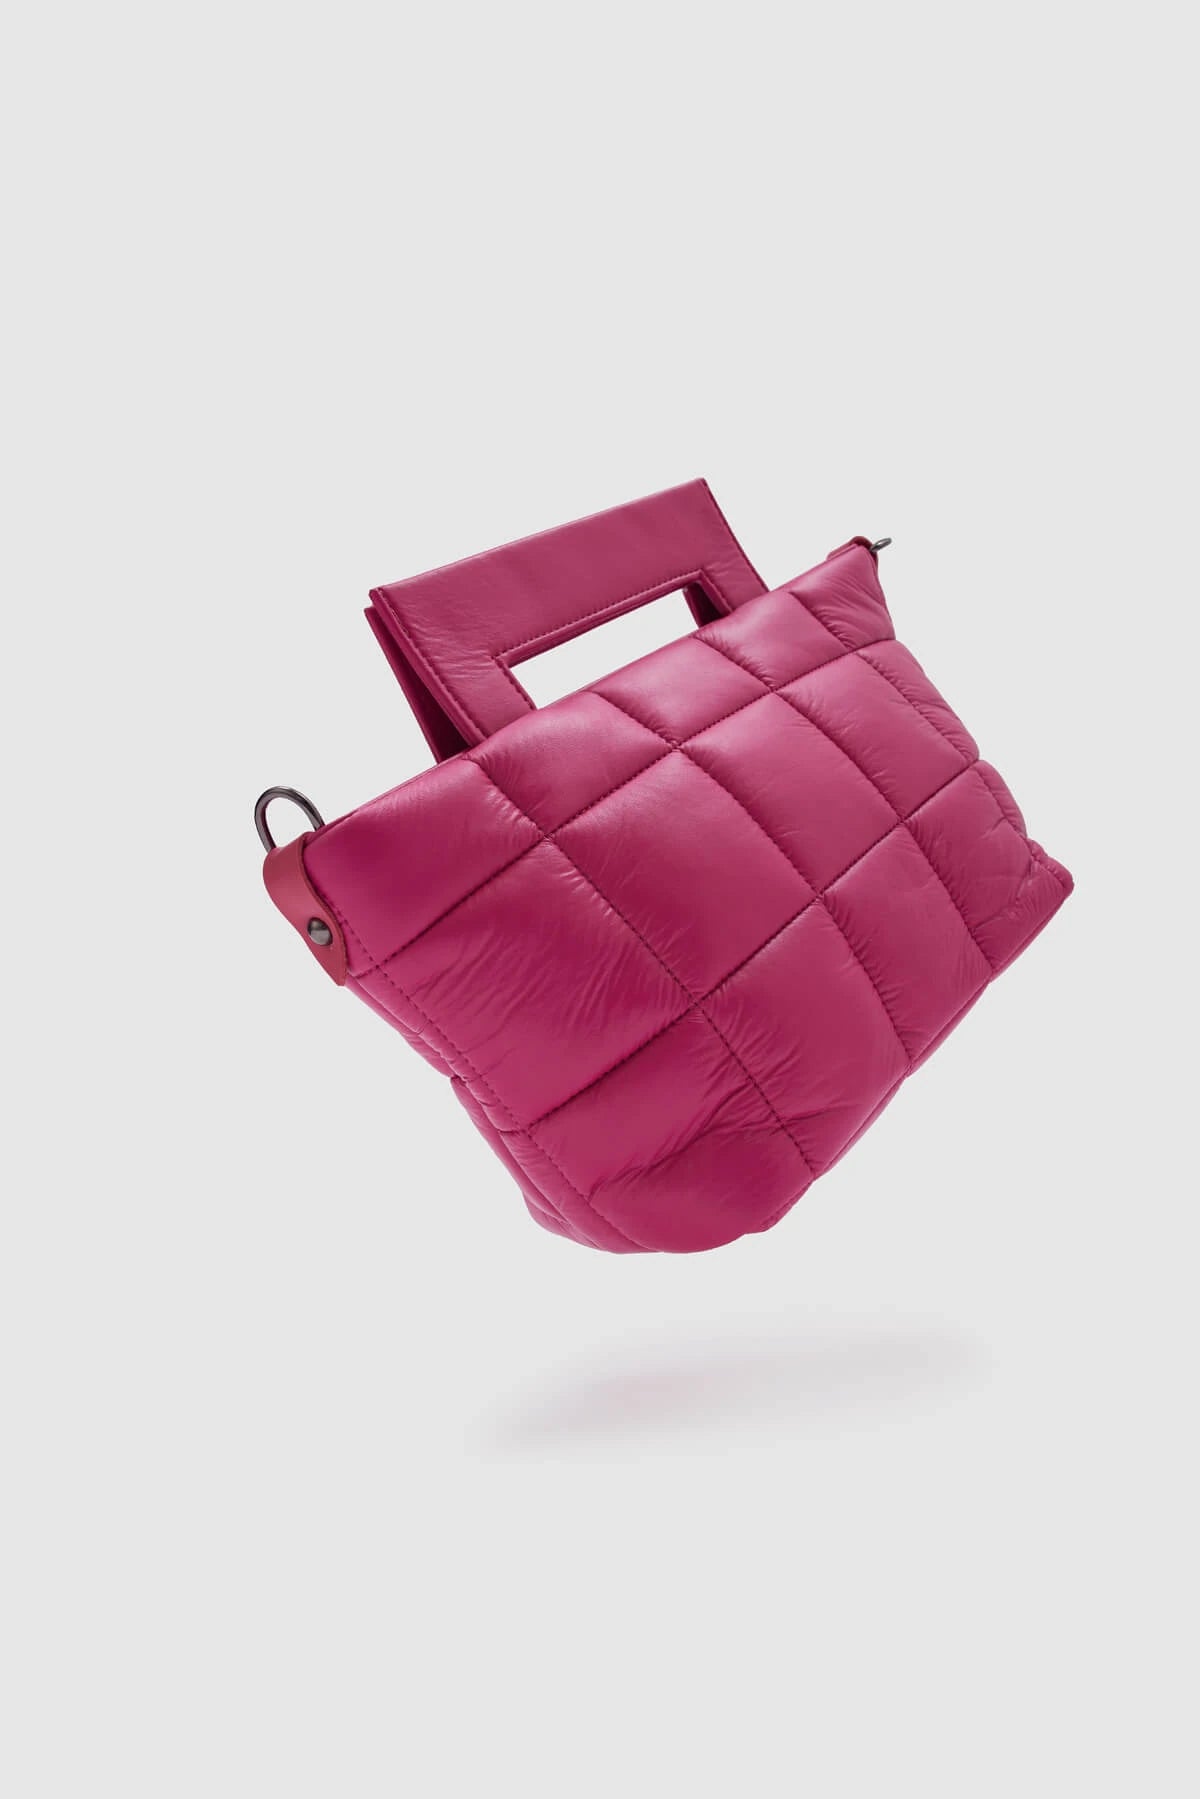 Puff Hand and Shoulder Bag handbag LUNARITY GARAGE Pink  